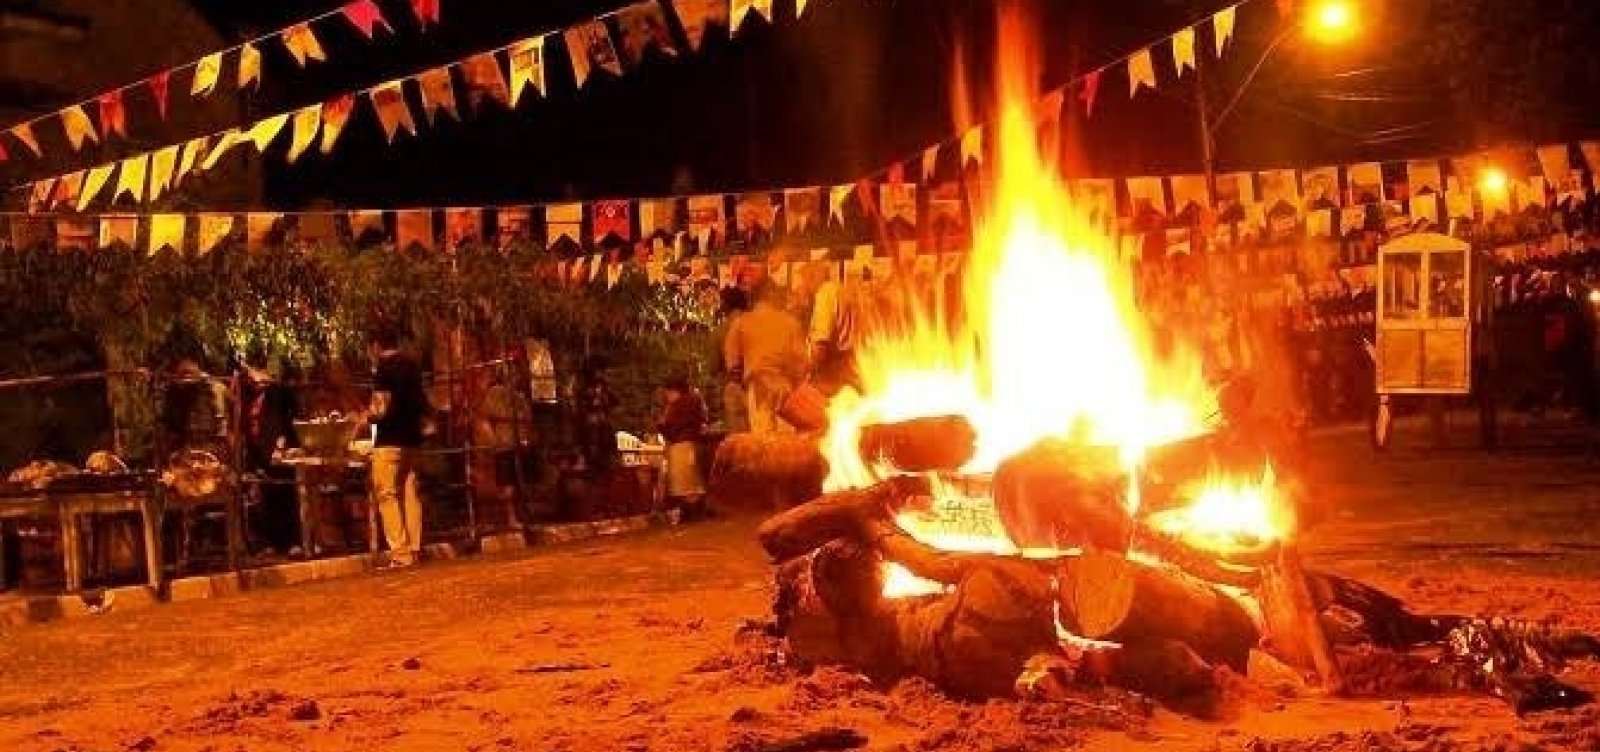 Justiça suspende decreto que proibia fogueiras em festas juninas na cidade de Lage